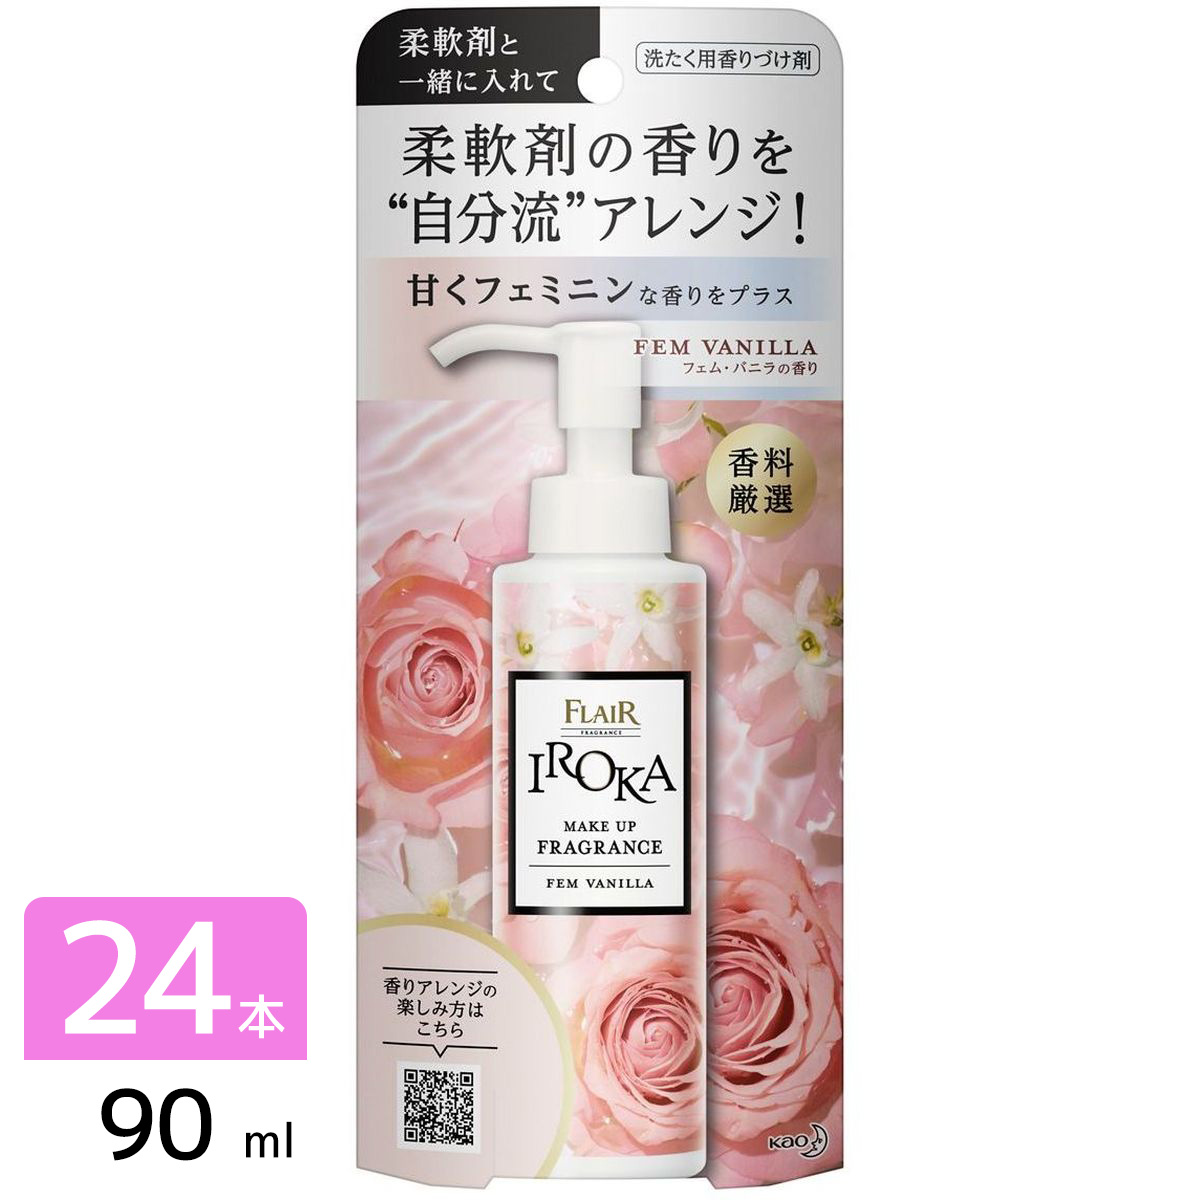 IROKA メイクアップフレグランス 洗たく用香りづけ剤 フェムバニラ 本体 90ml×24本